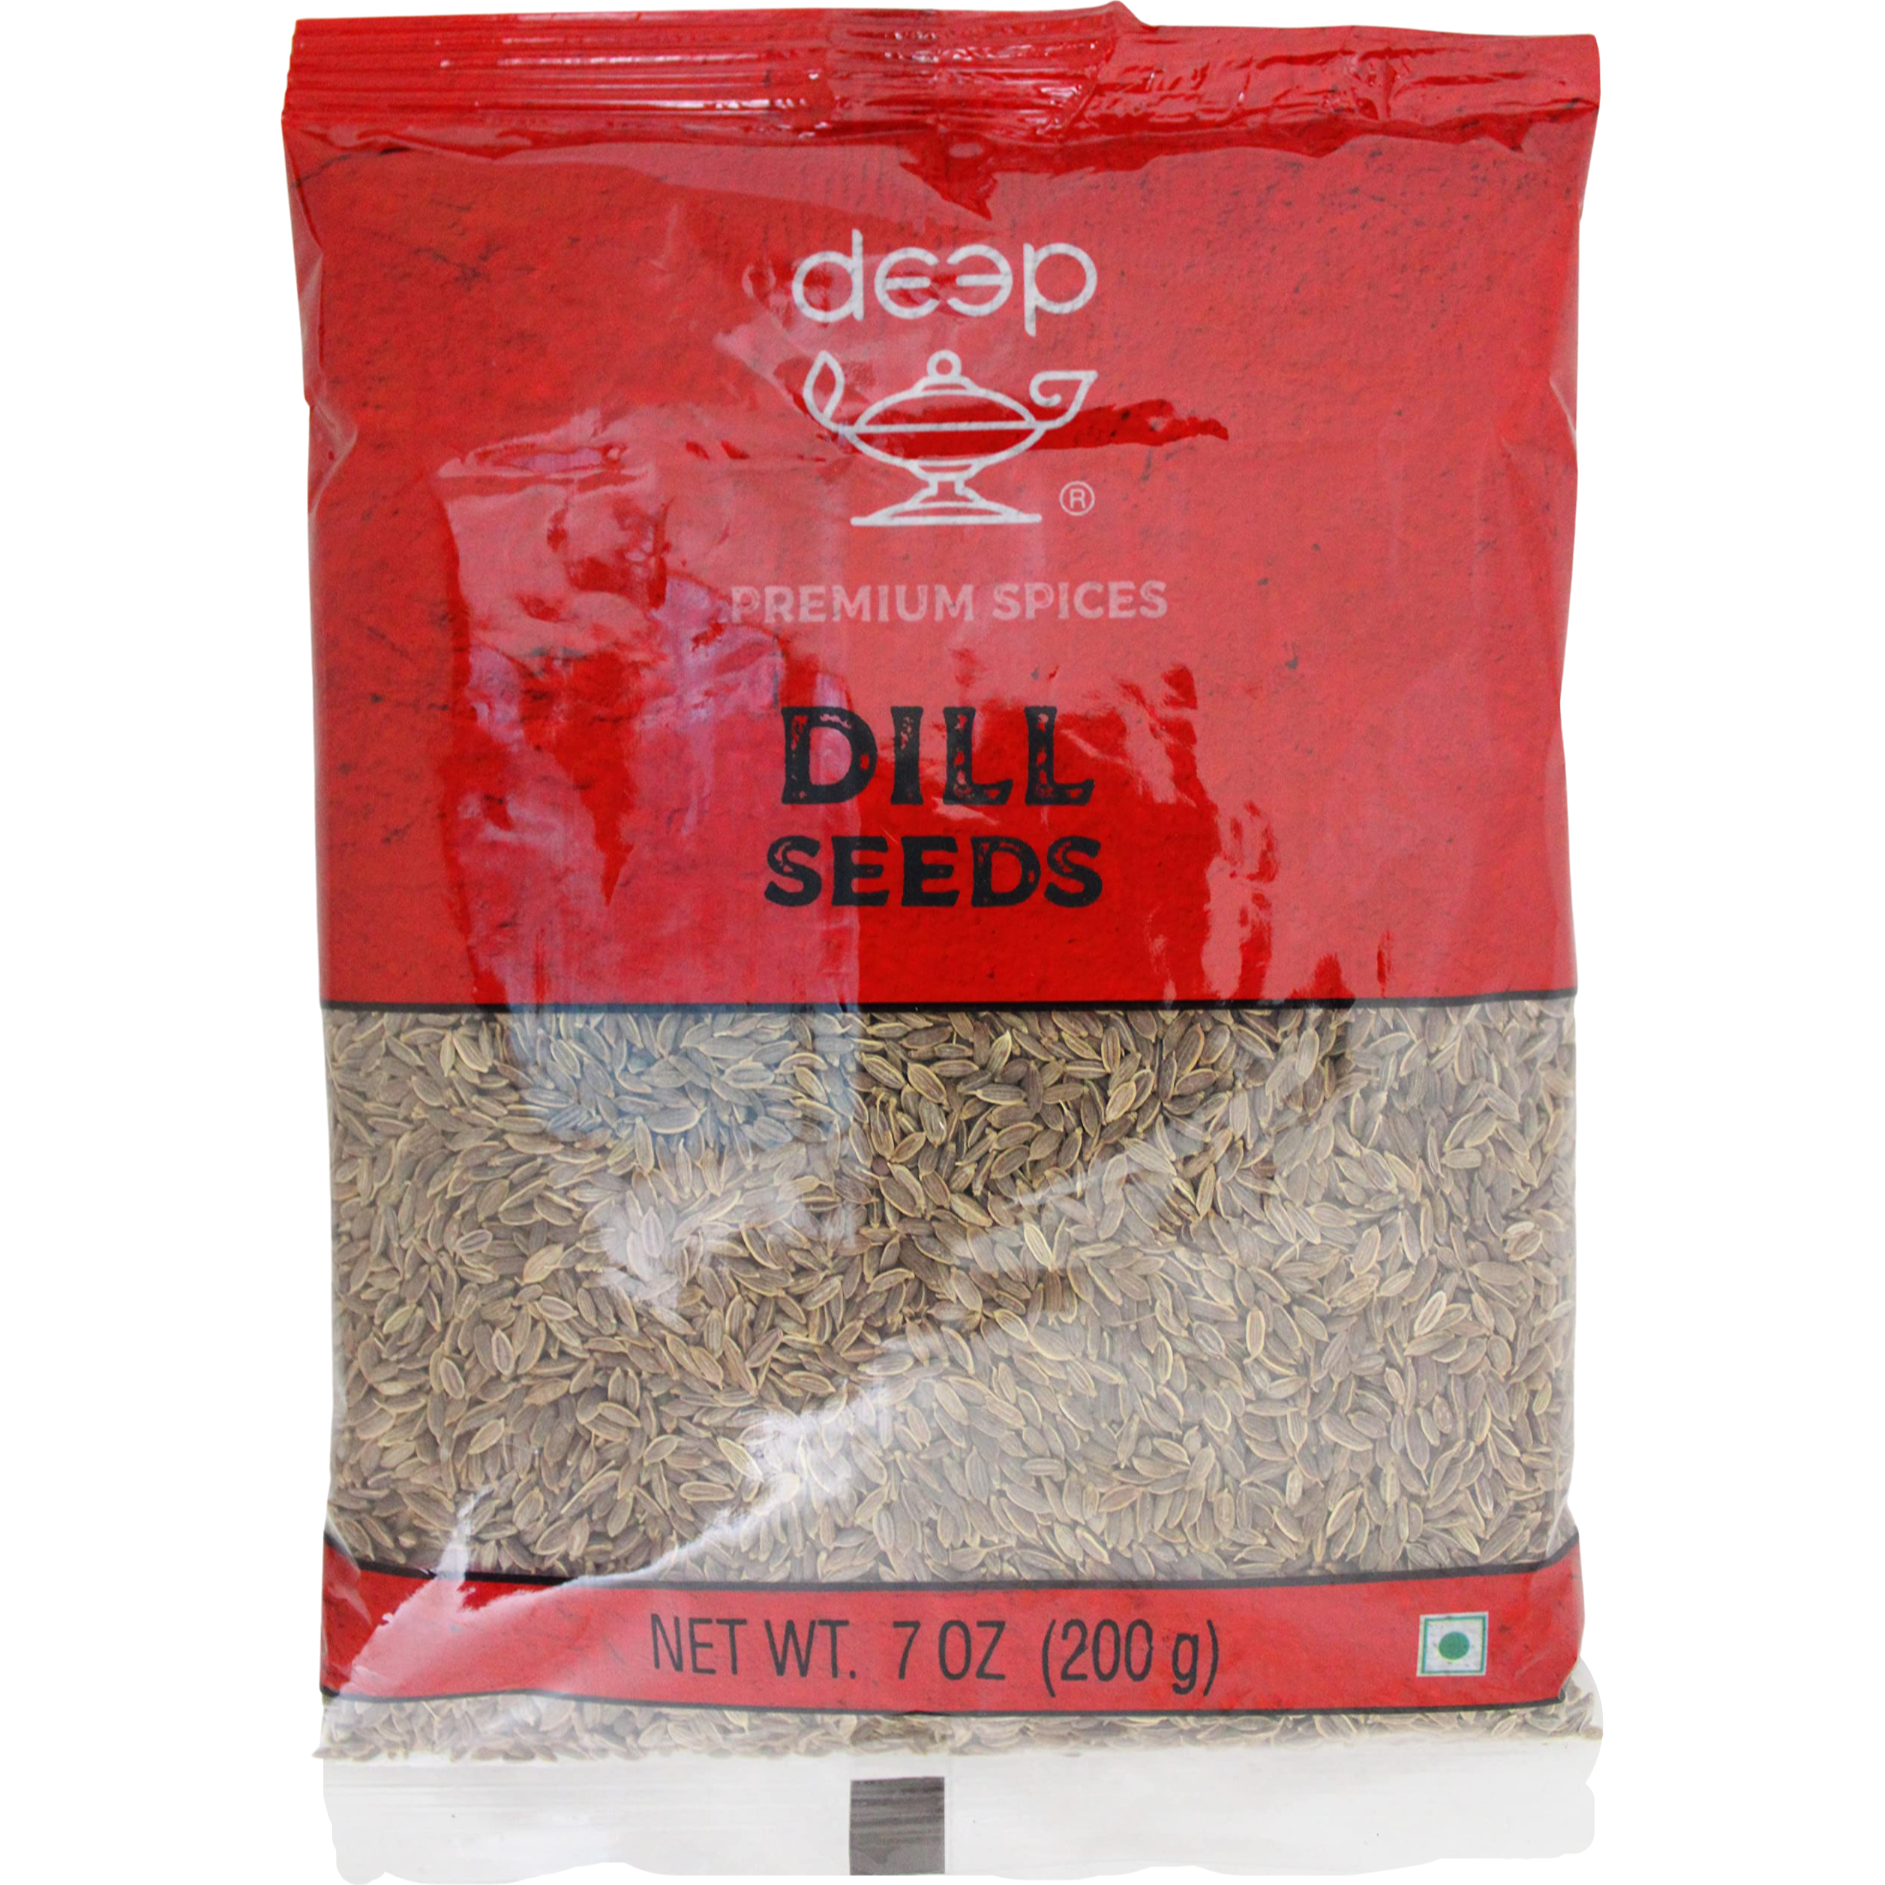 Deep Dill Seeds, 200 g